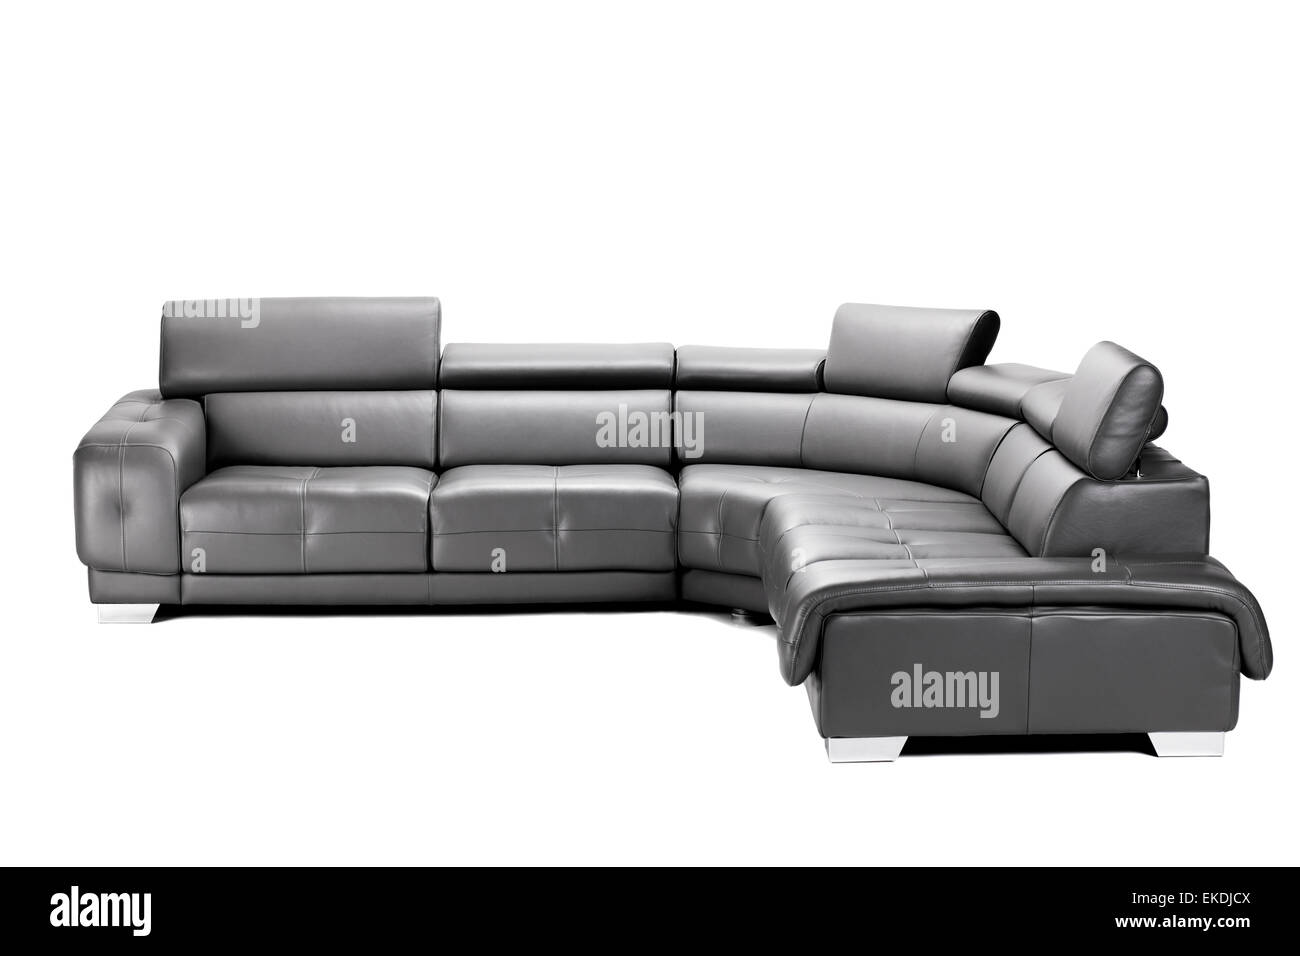 Moderni divani in pelle nera isolato su bianco Foto Stock